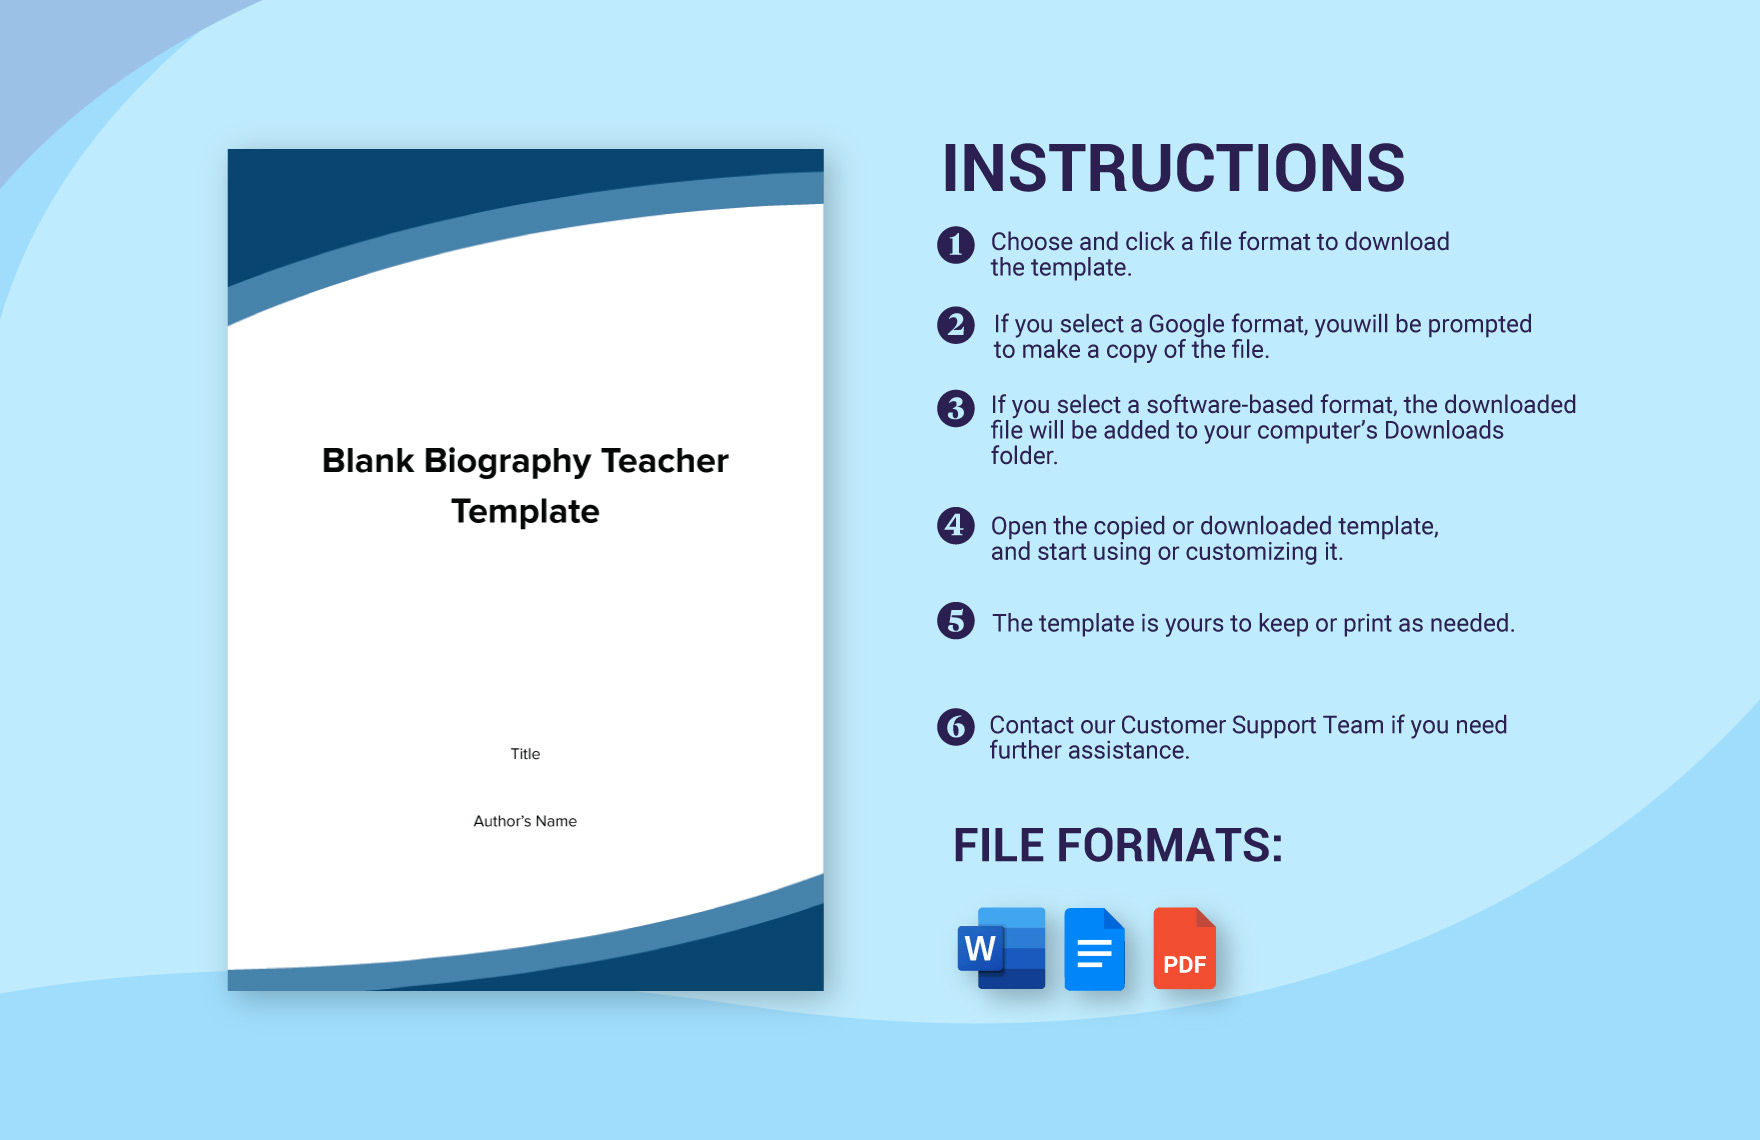 Blank Biography Teacher Template